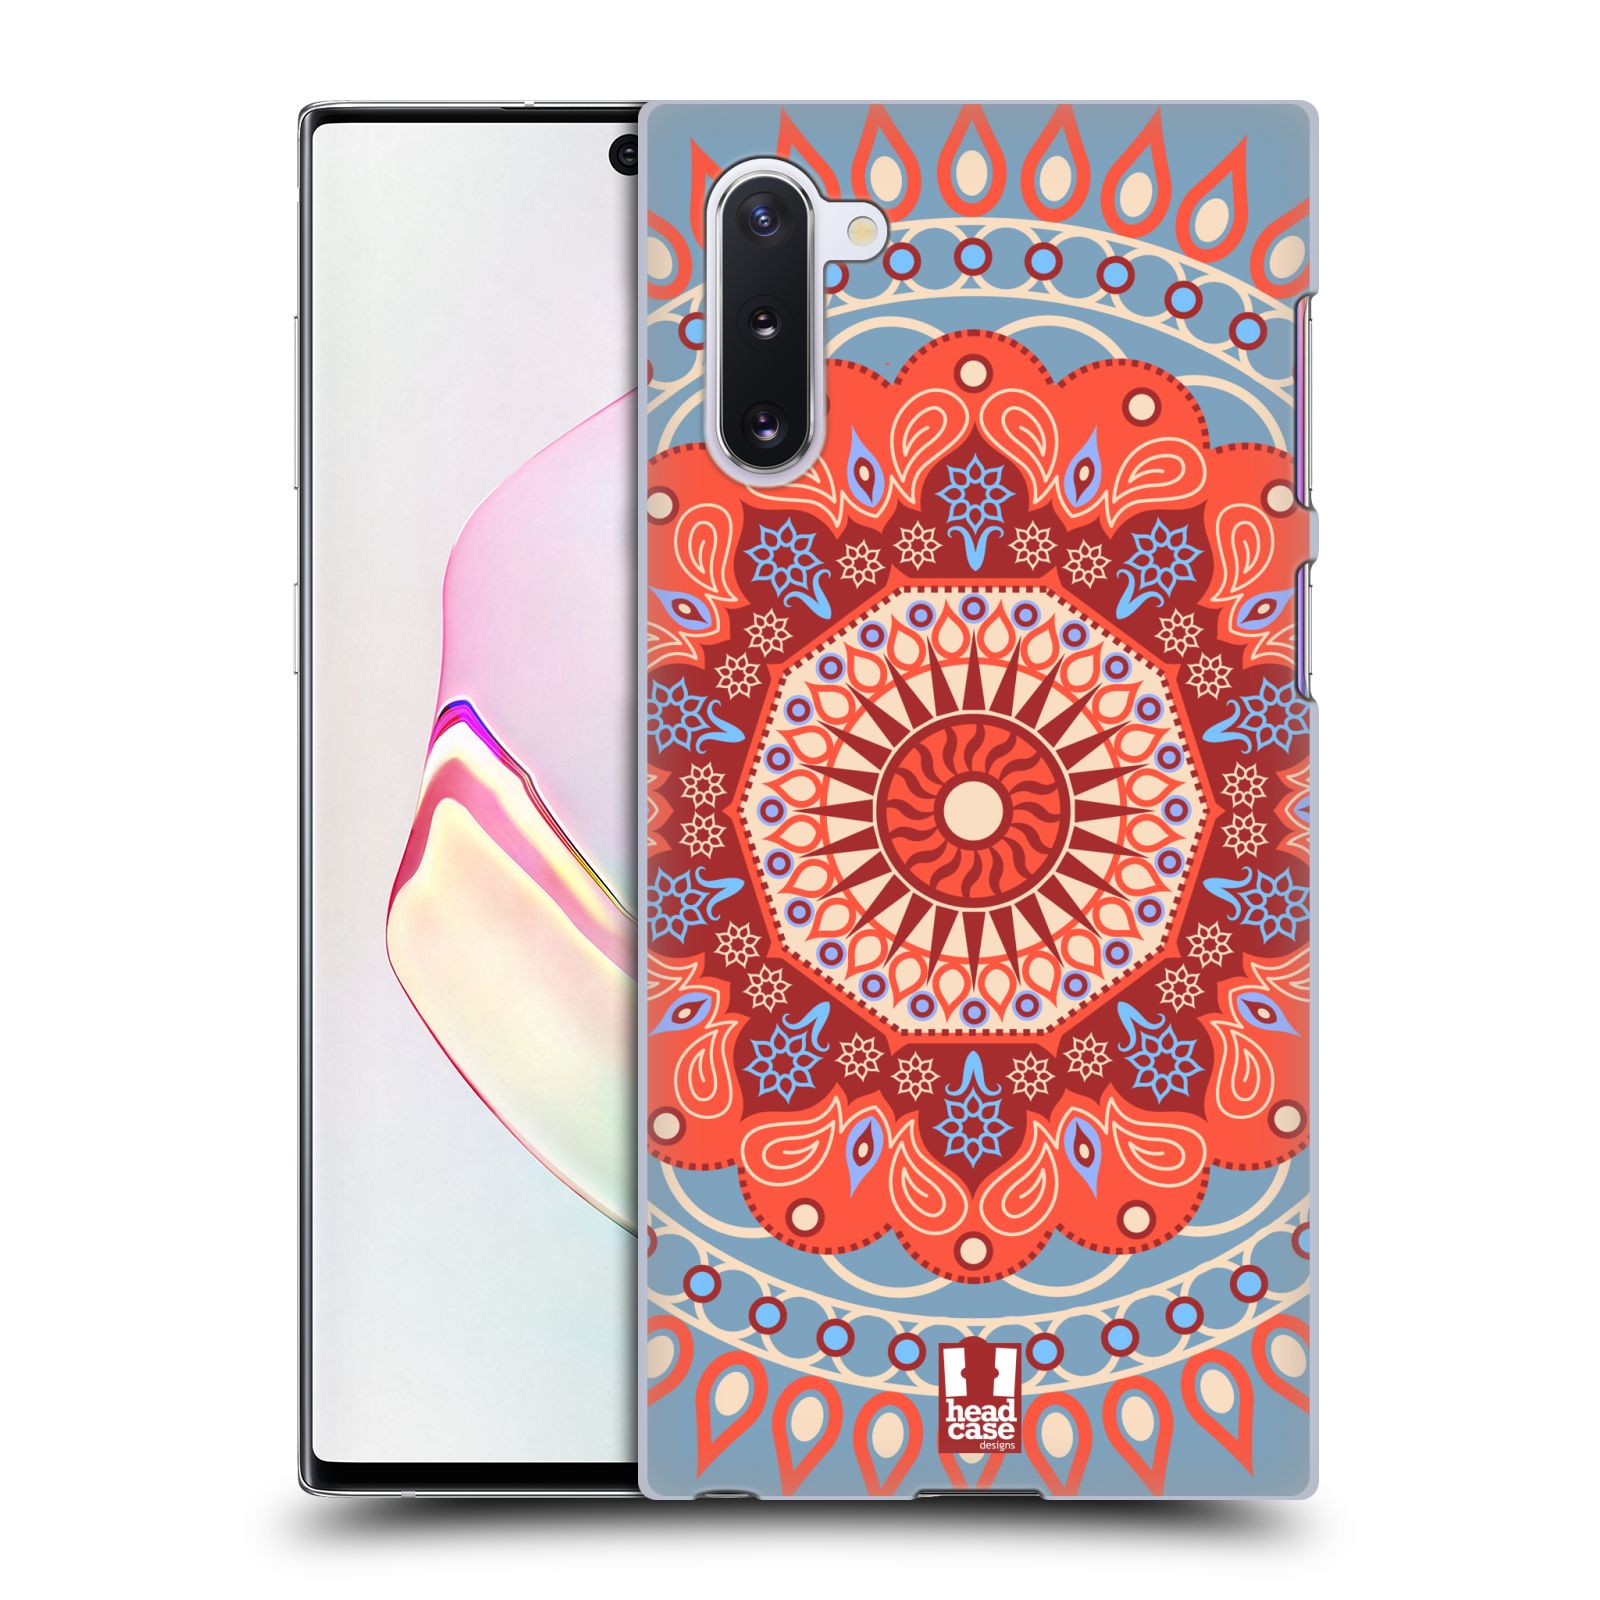 Pouzdro na mobil Samsung Galaxy Note 10 - HEAD CASE - vzor Indie Mandala slunce barevný motiv ČERVENÁ A MODRÁ